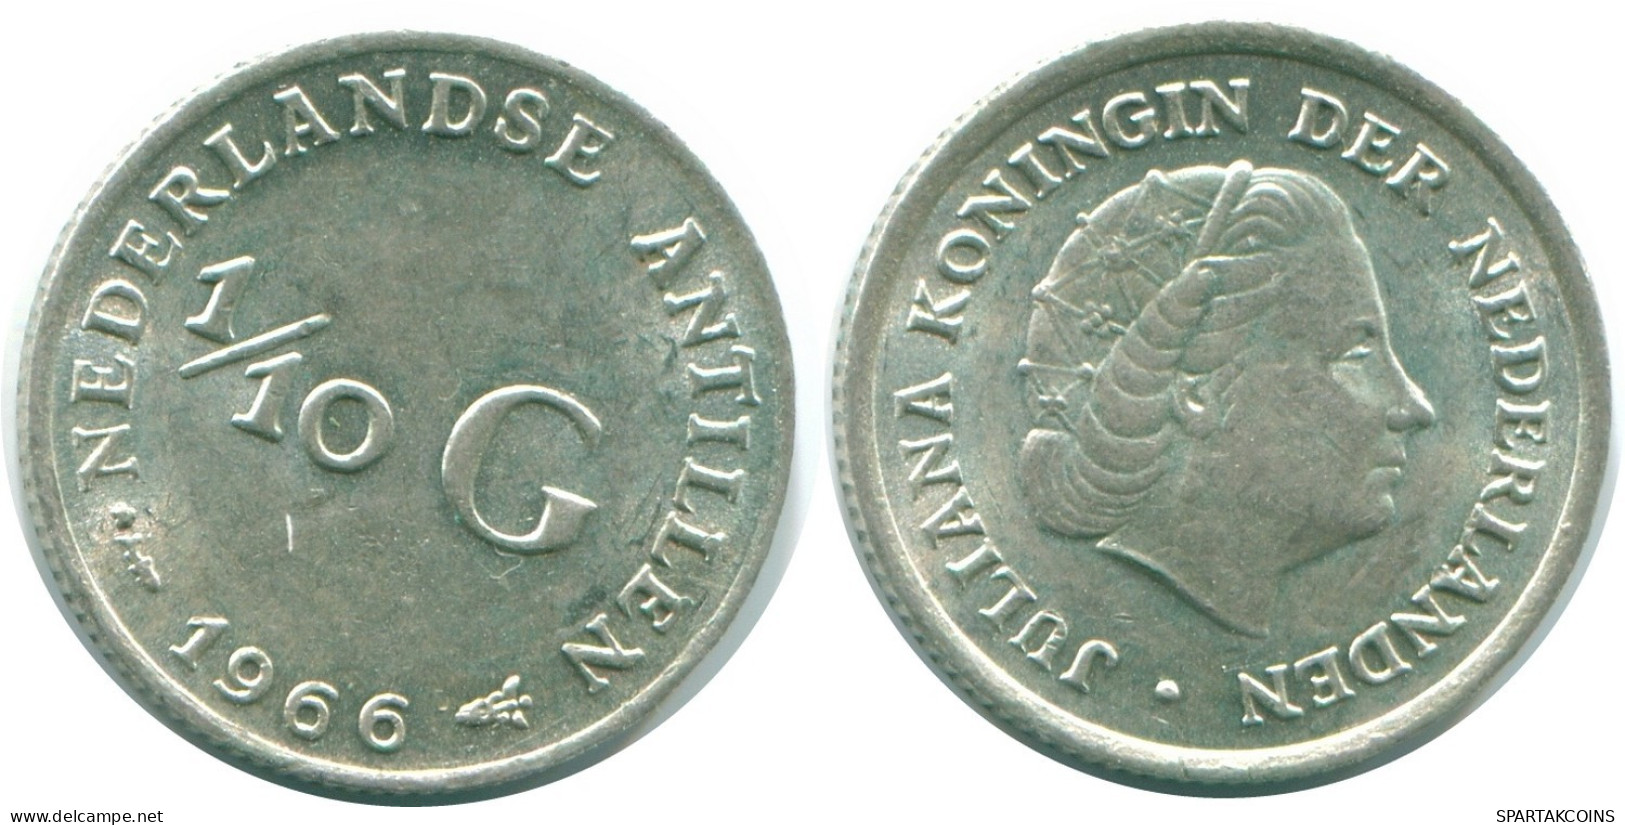 1/10 GULDEN 1966 NIEDERLÄNDISCHE ANTILLEN SILBER Koloniale Münze #NL12743.3.D.A - Nederlandse Antillen